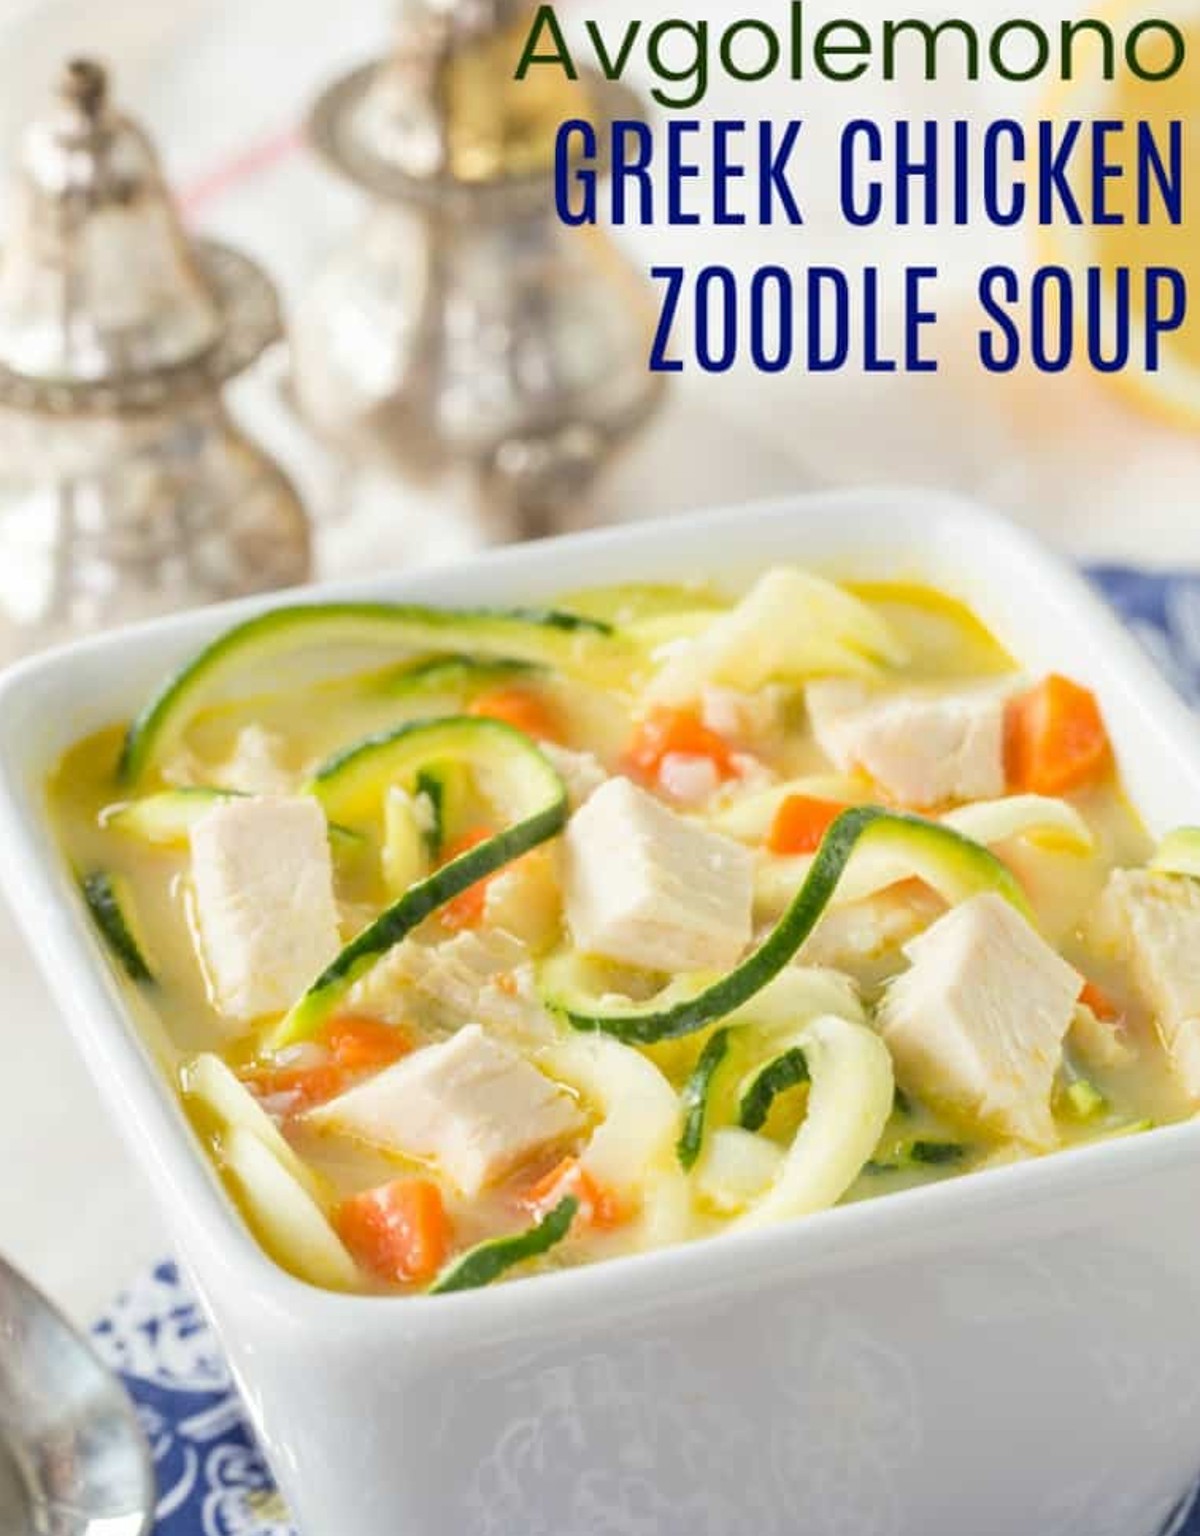 zoodle soup